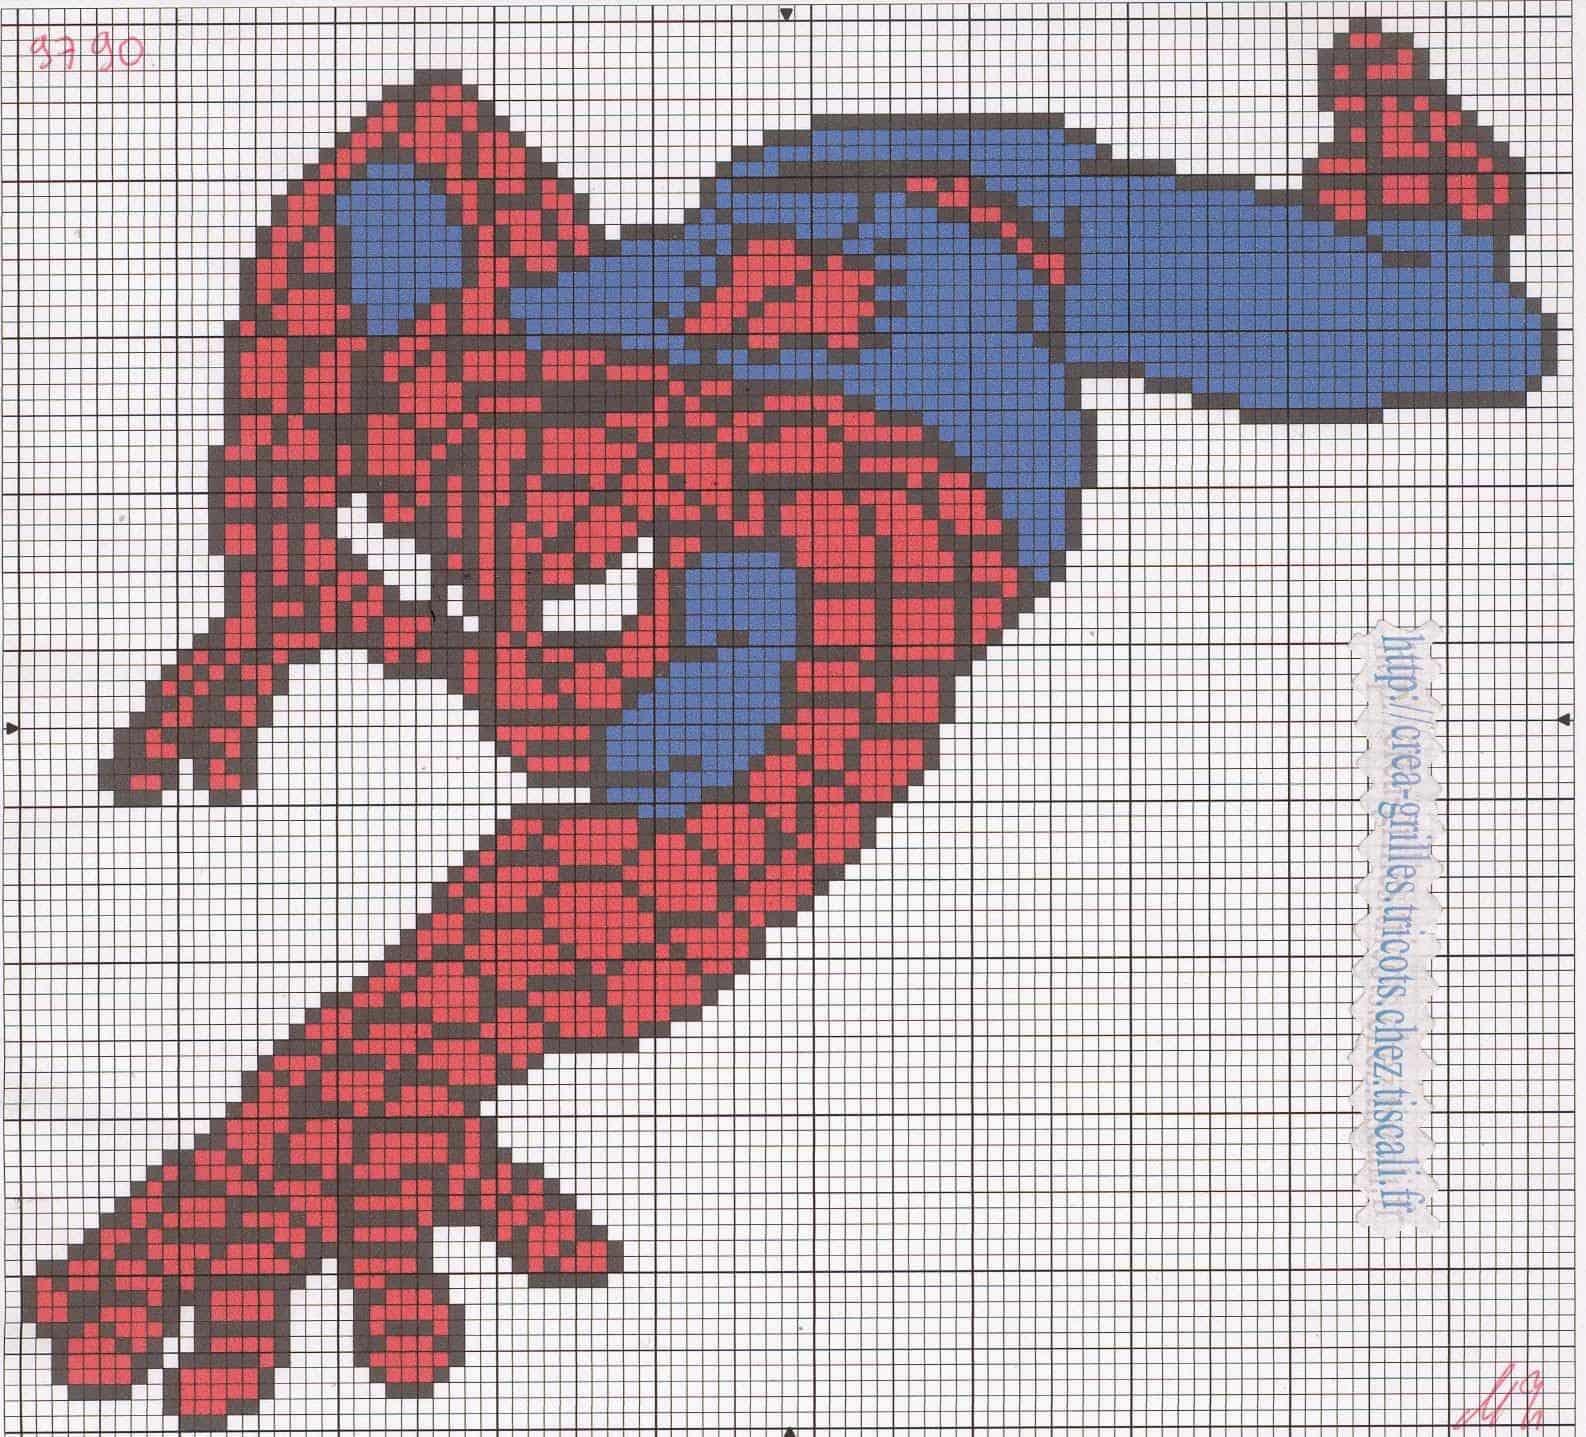 Spider Man Pixel Art Grid.